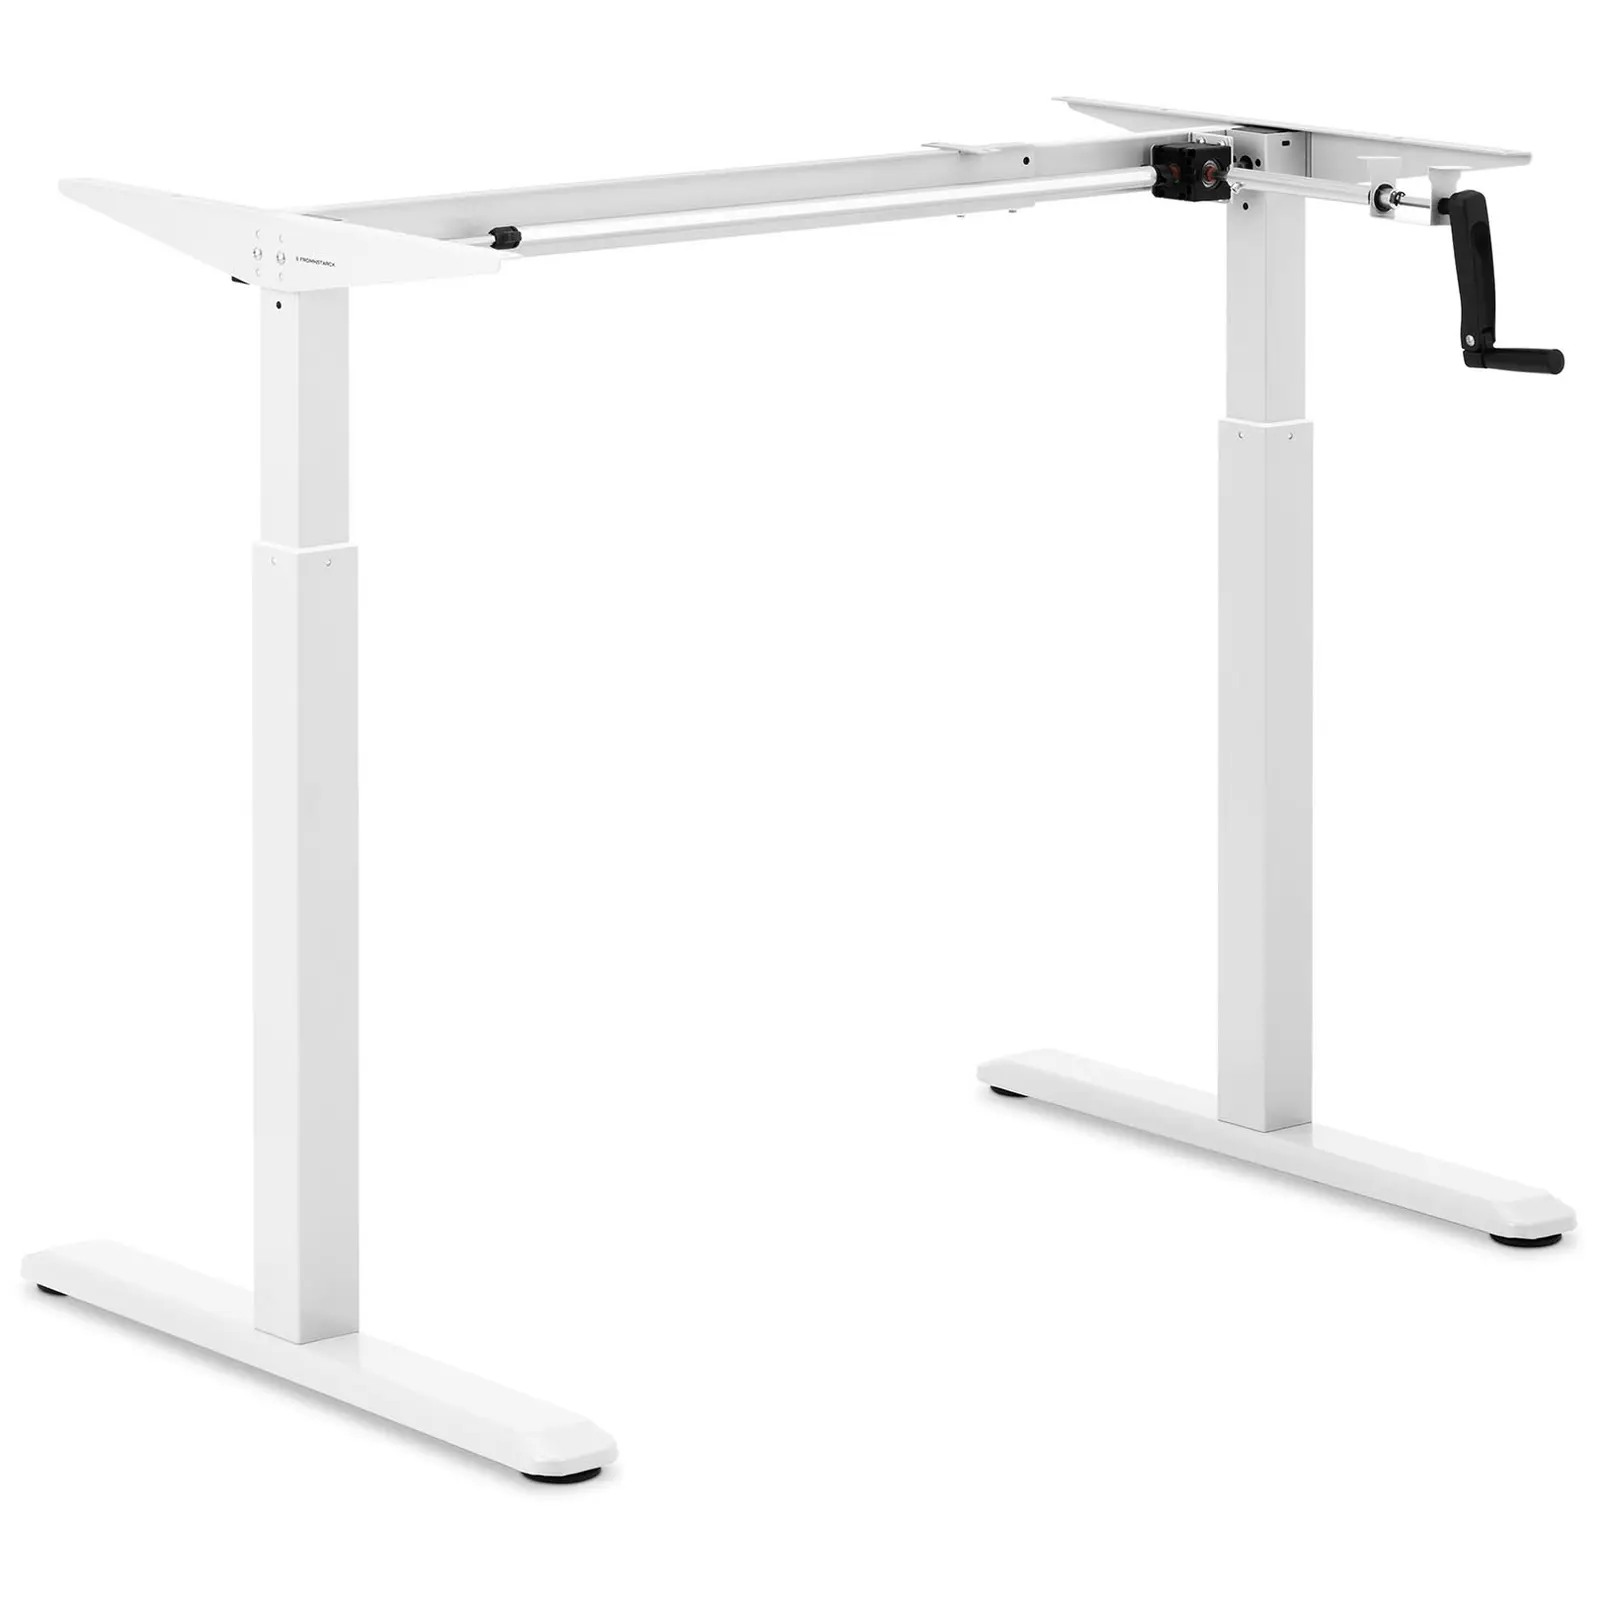 Supporto scrivania regolabile in altezza - Manuale - 70 kg - Bianco